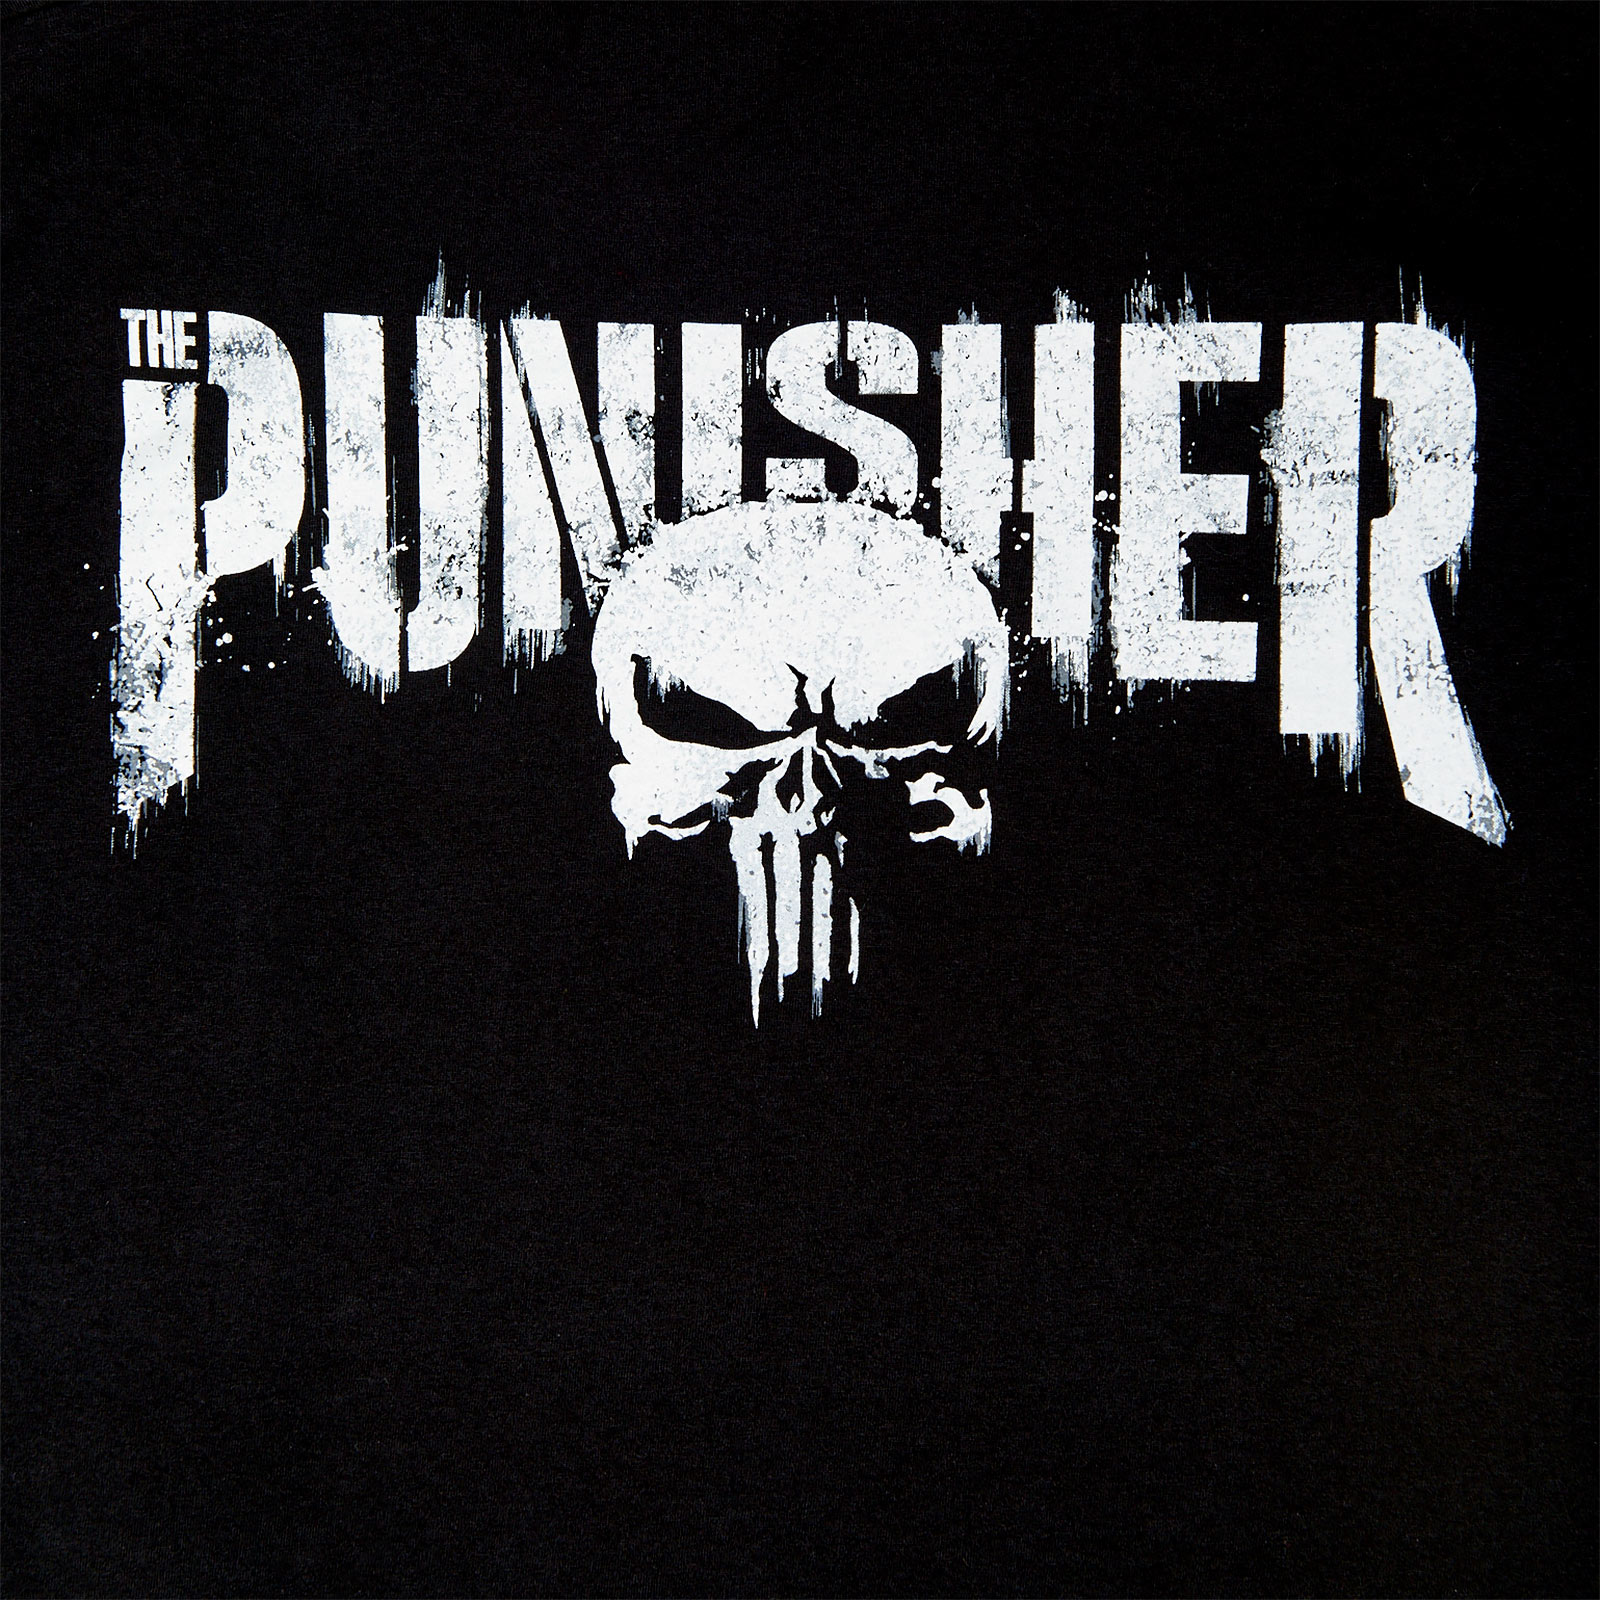 Punisher - Le T-Shirt Vérité noir